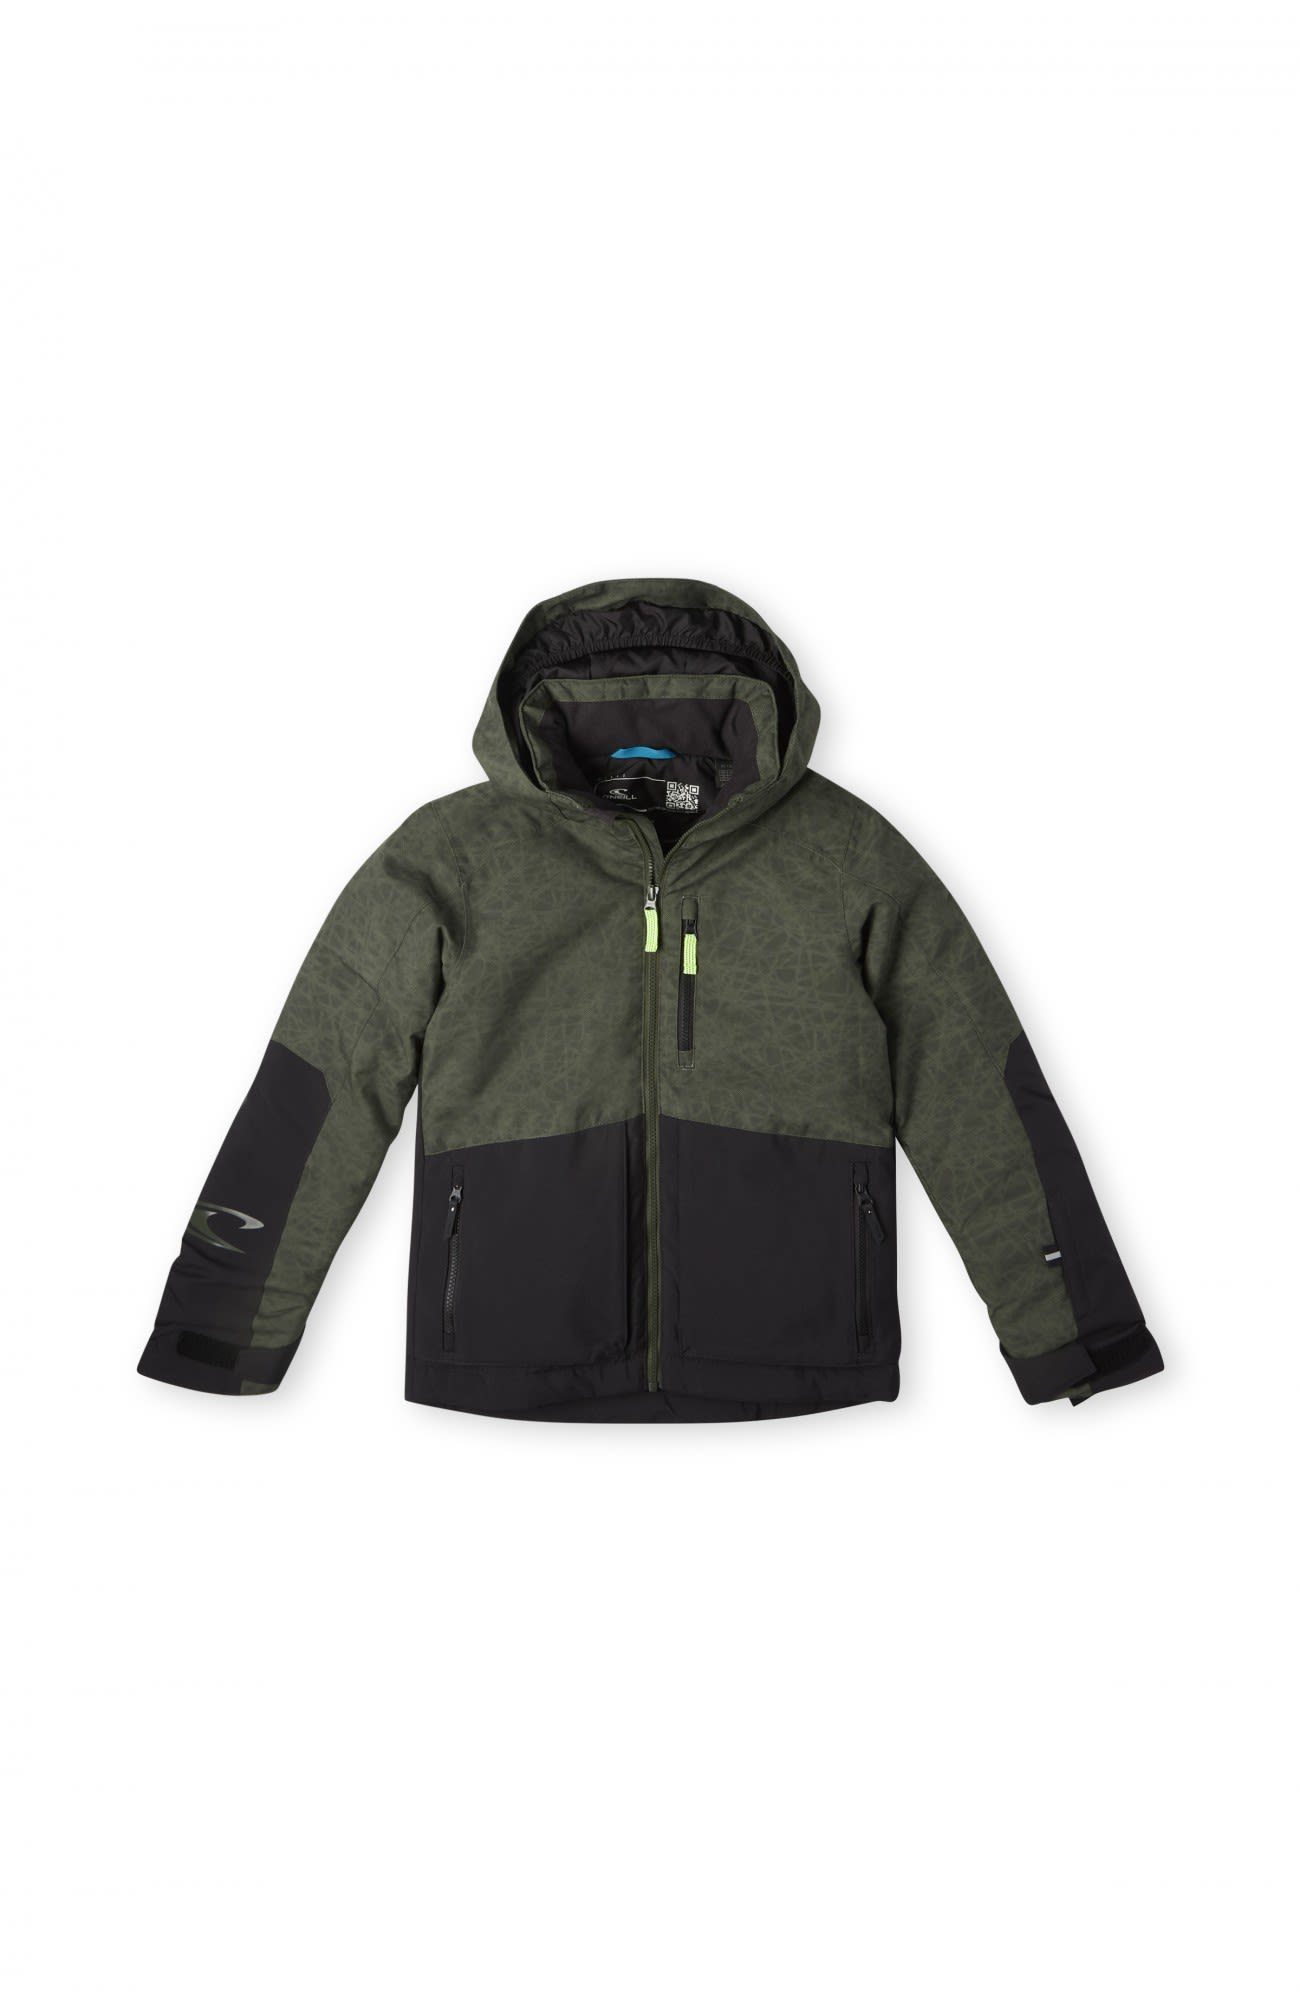 O'Neill Skijacke Oneill Boys Texture Jacket (vorgängermodell)